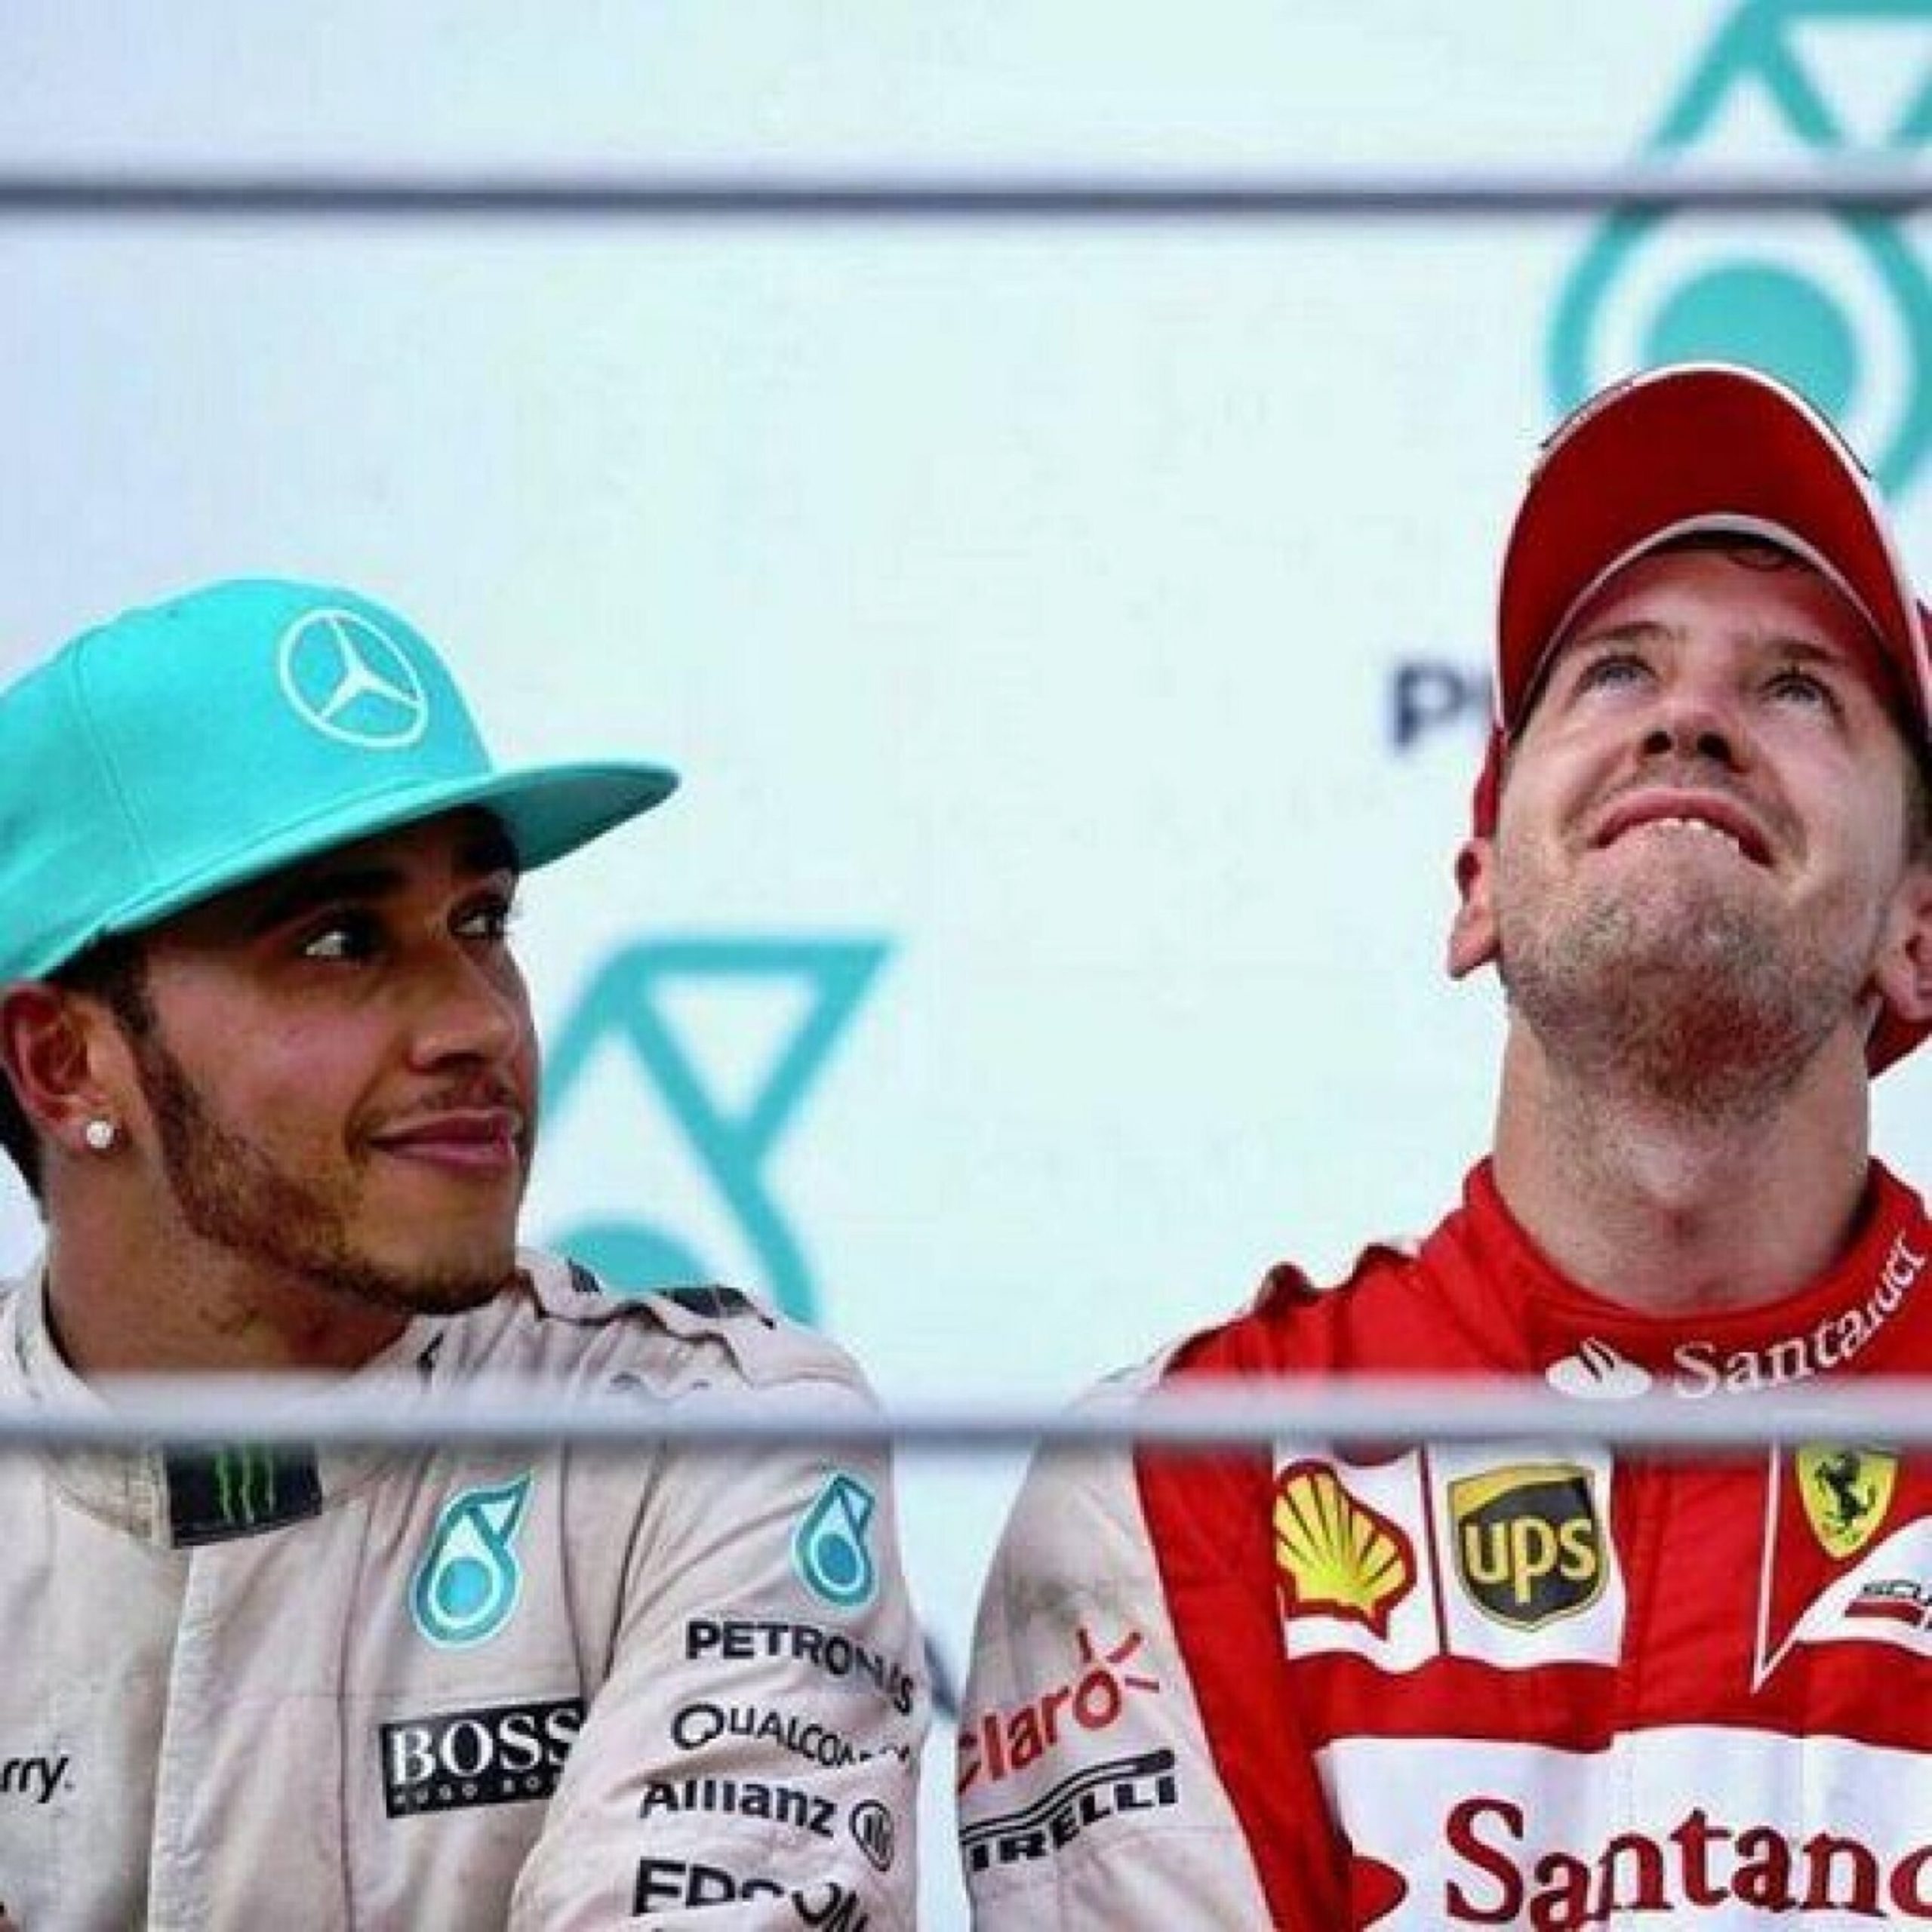 Vettel Beats Hamilton (And Senna)